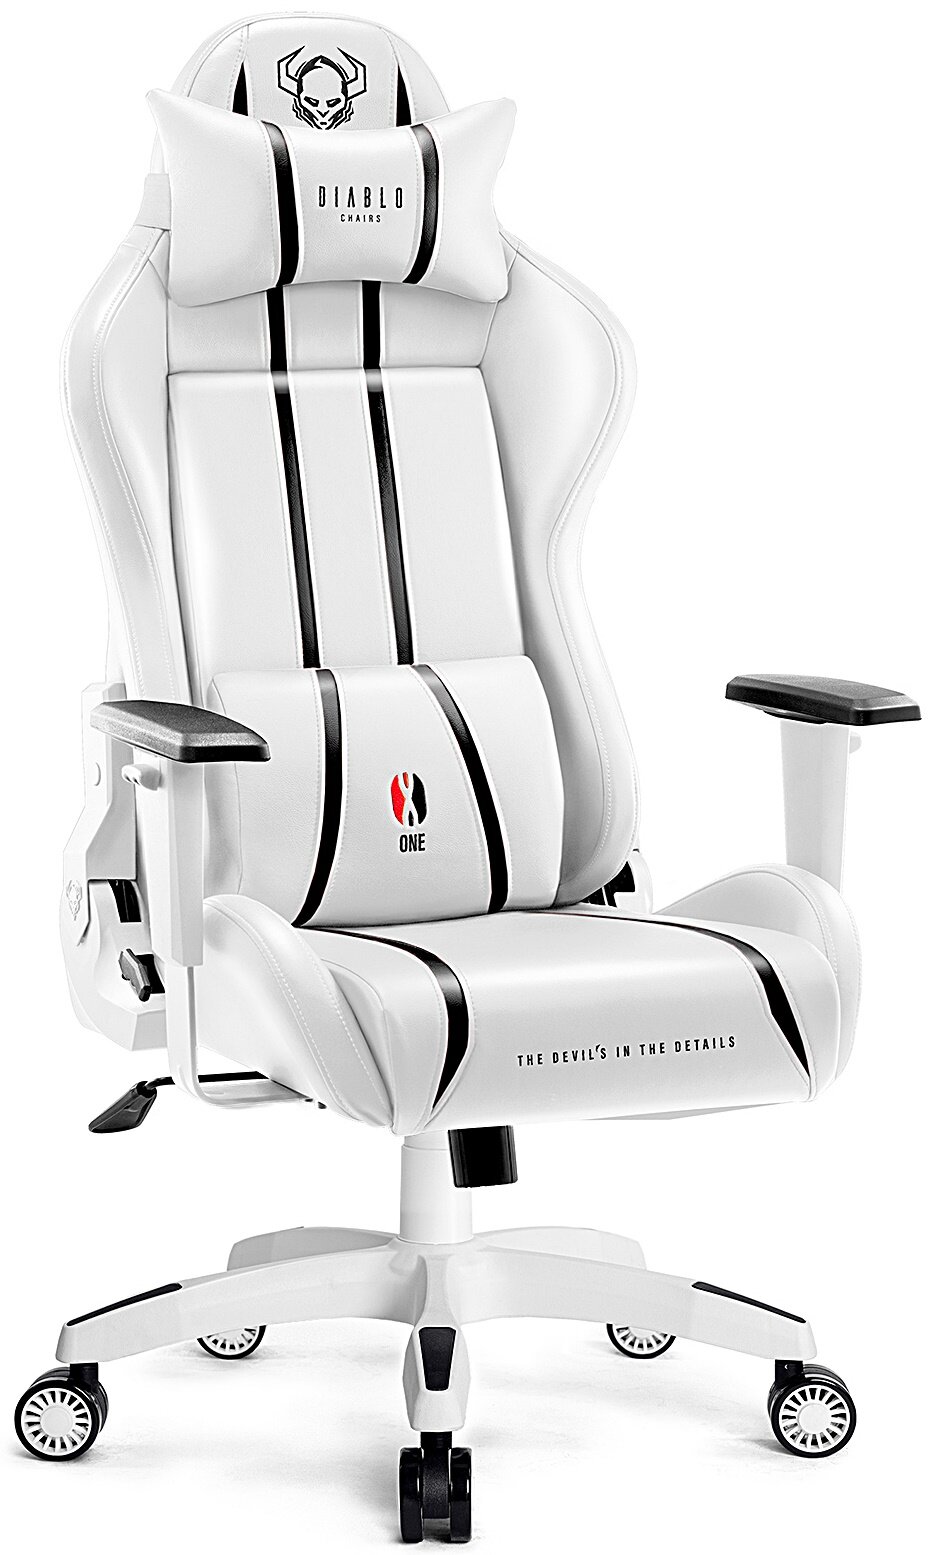 Fotel DIABLO X-ONE 2.0 Normal Size Biało-czarny - niskie ceny i opinie w  Media Expert